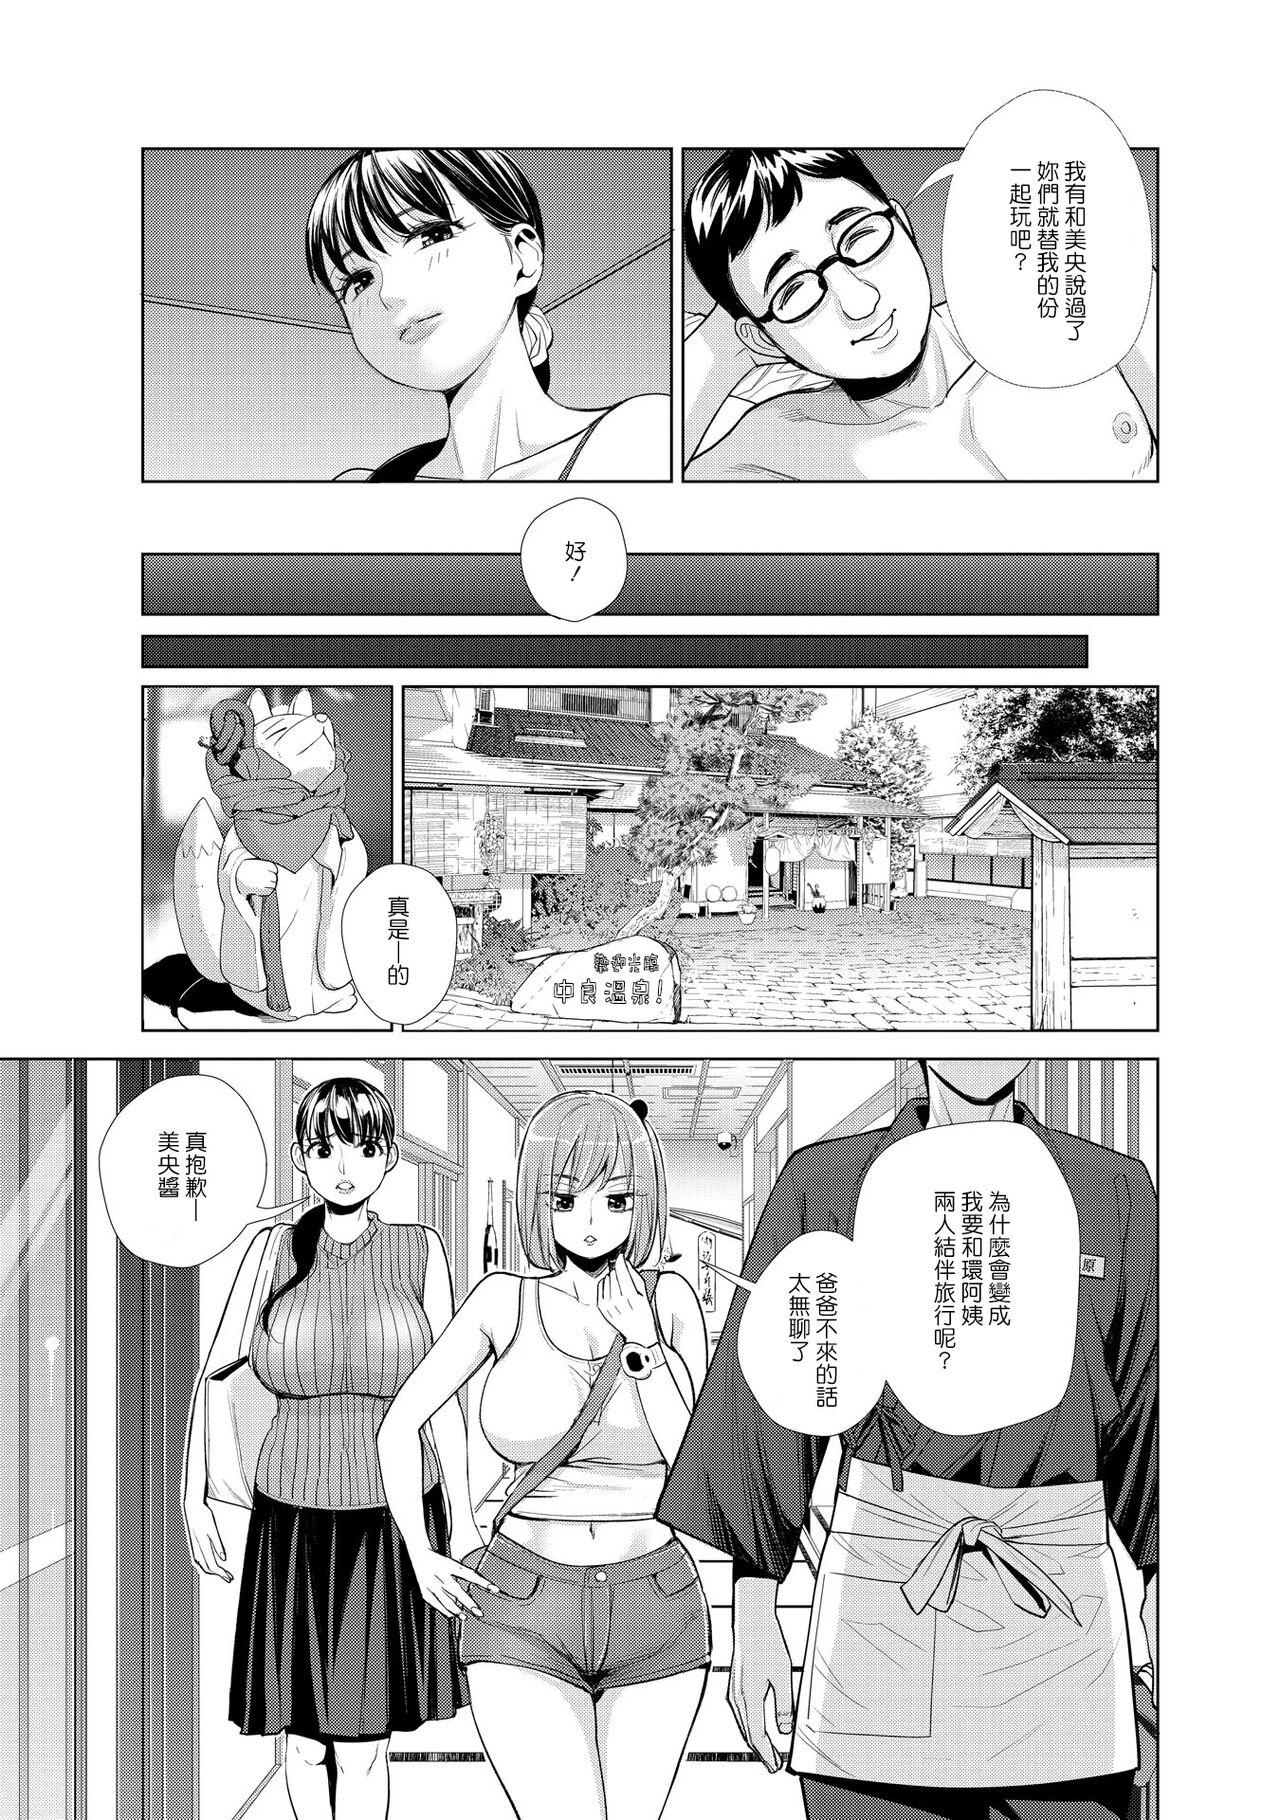 Flagra Nakayoku no yu e youkoso Hentai - Page 5